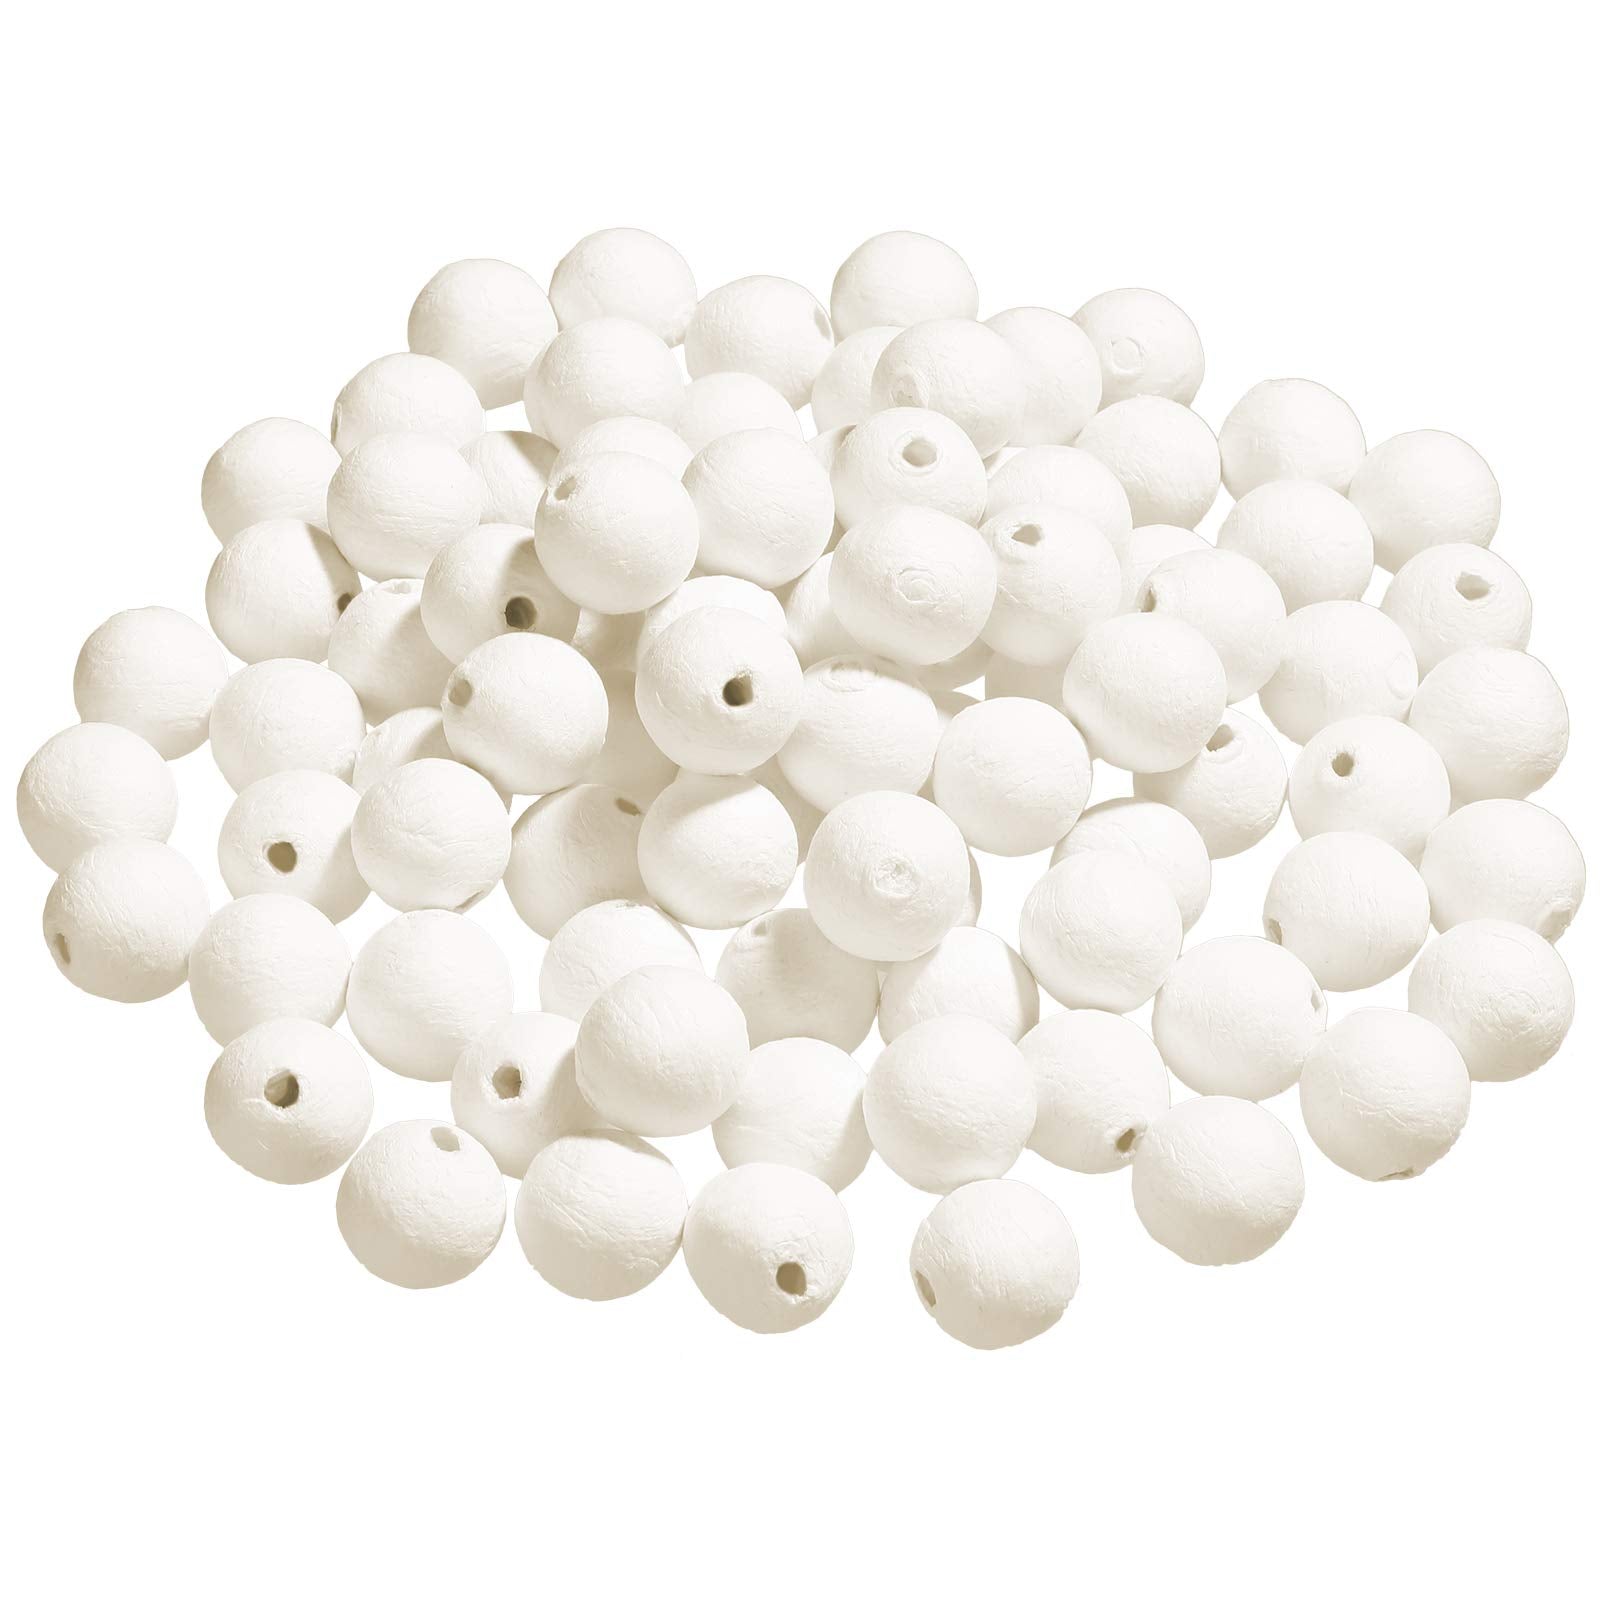 Cotton White Balls - MazenOnline